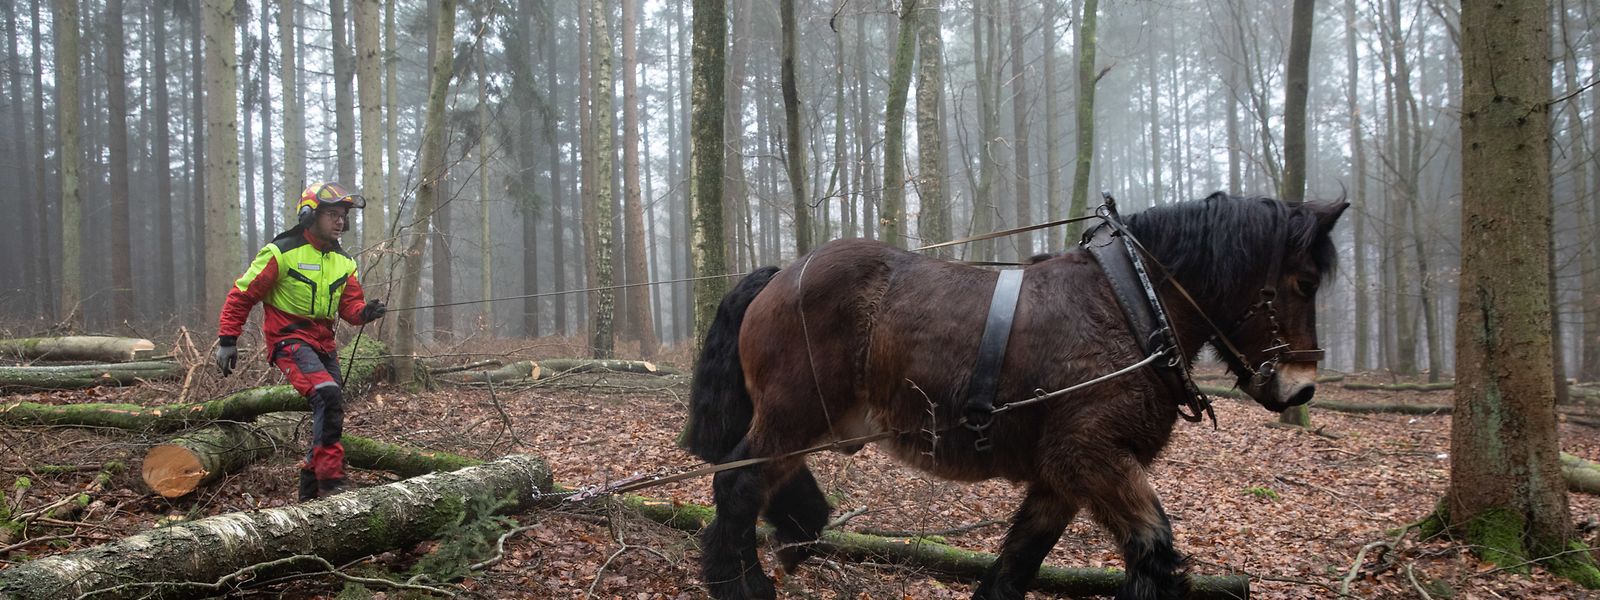 Mit seinen 800 Kilo Körpergewicht schafft Ardennerpferd Sepp mittelgroße Baumstämme weg. Für schwerere Lasten muss die Maschine ran.